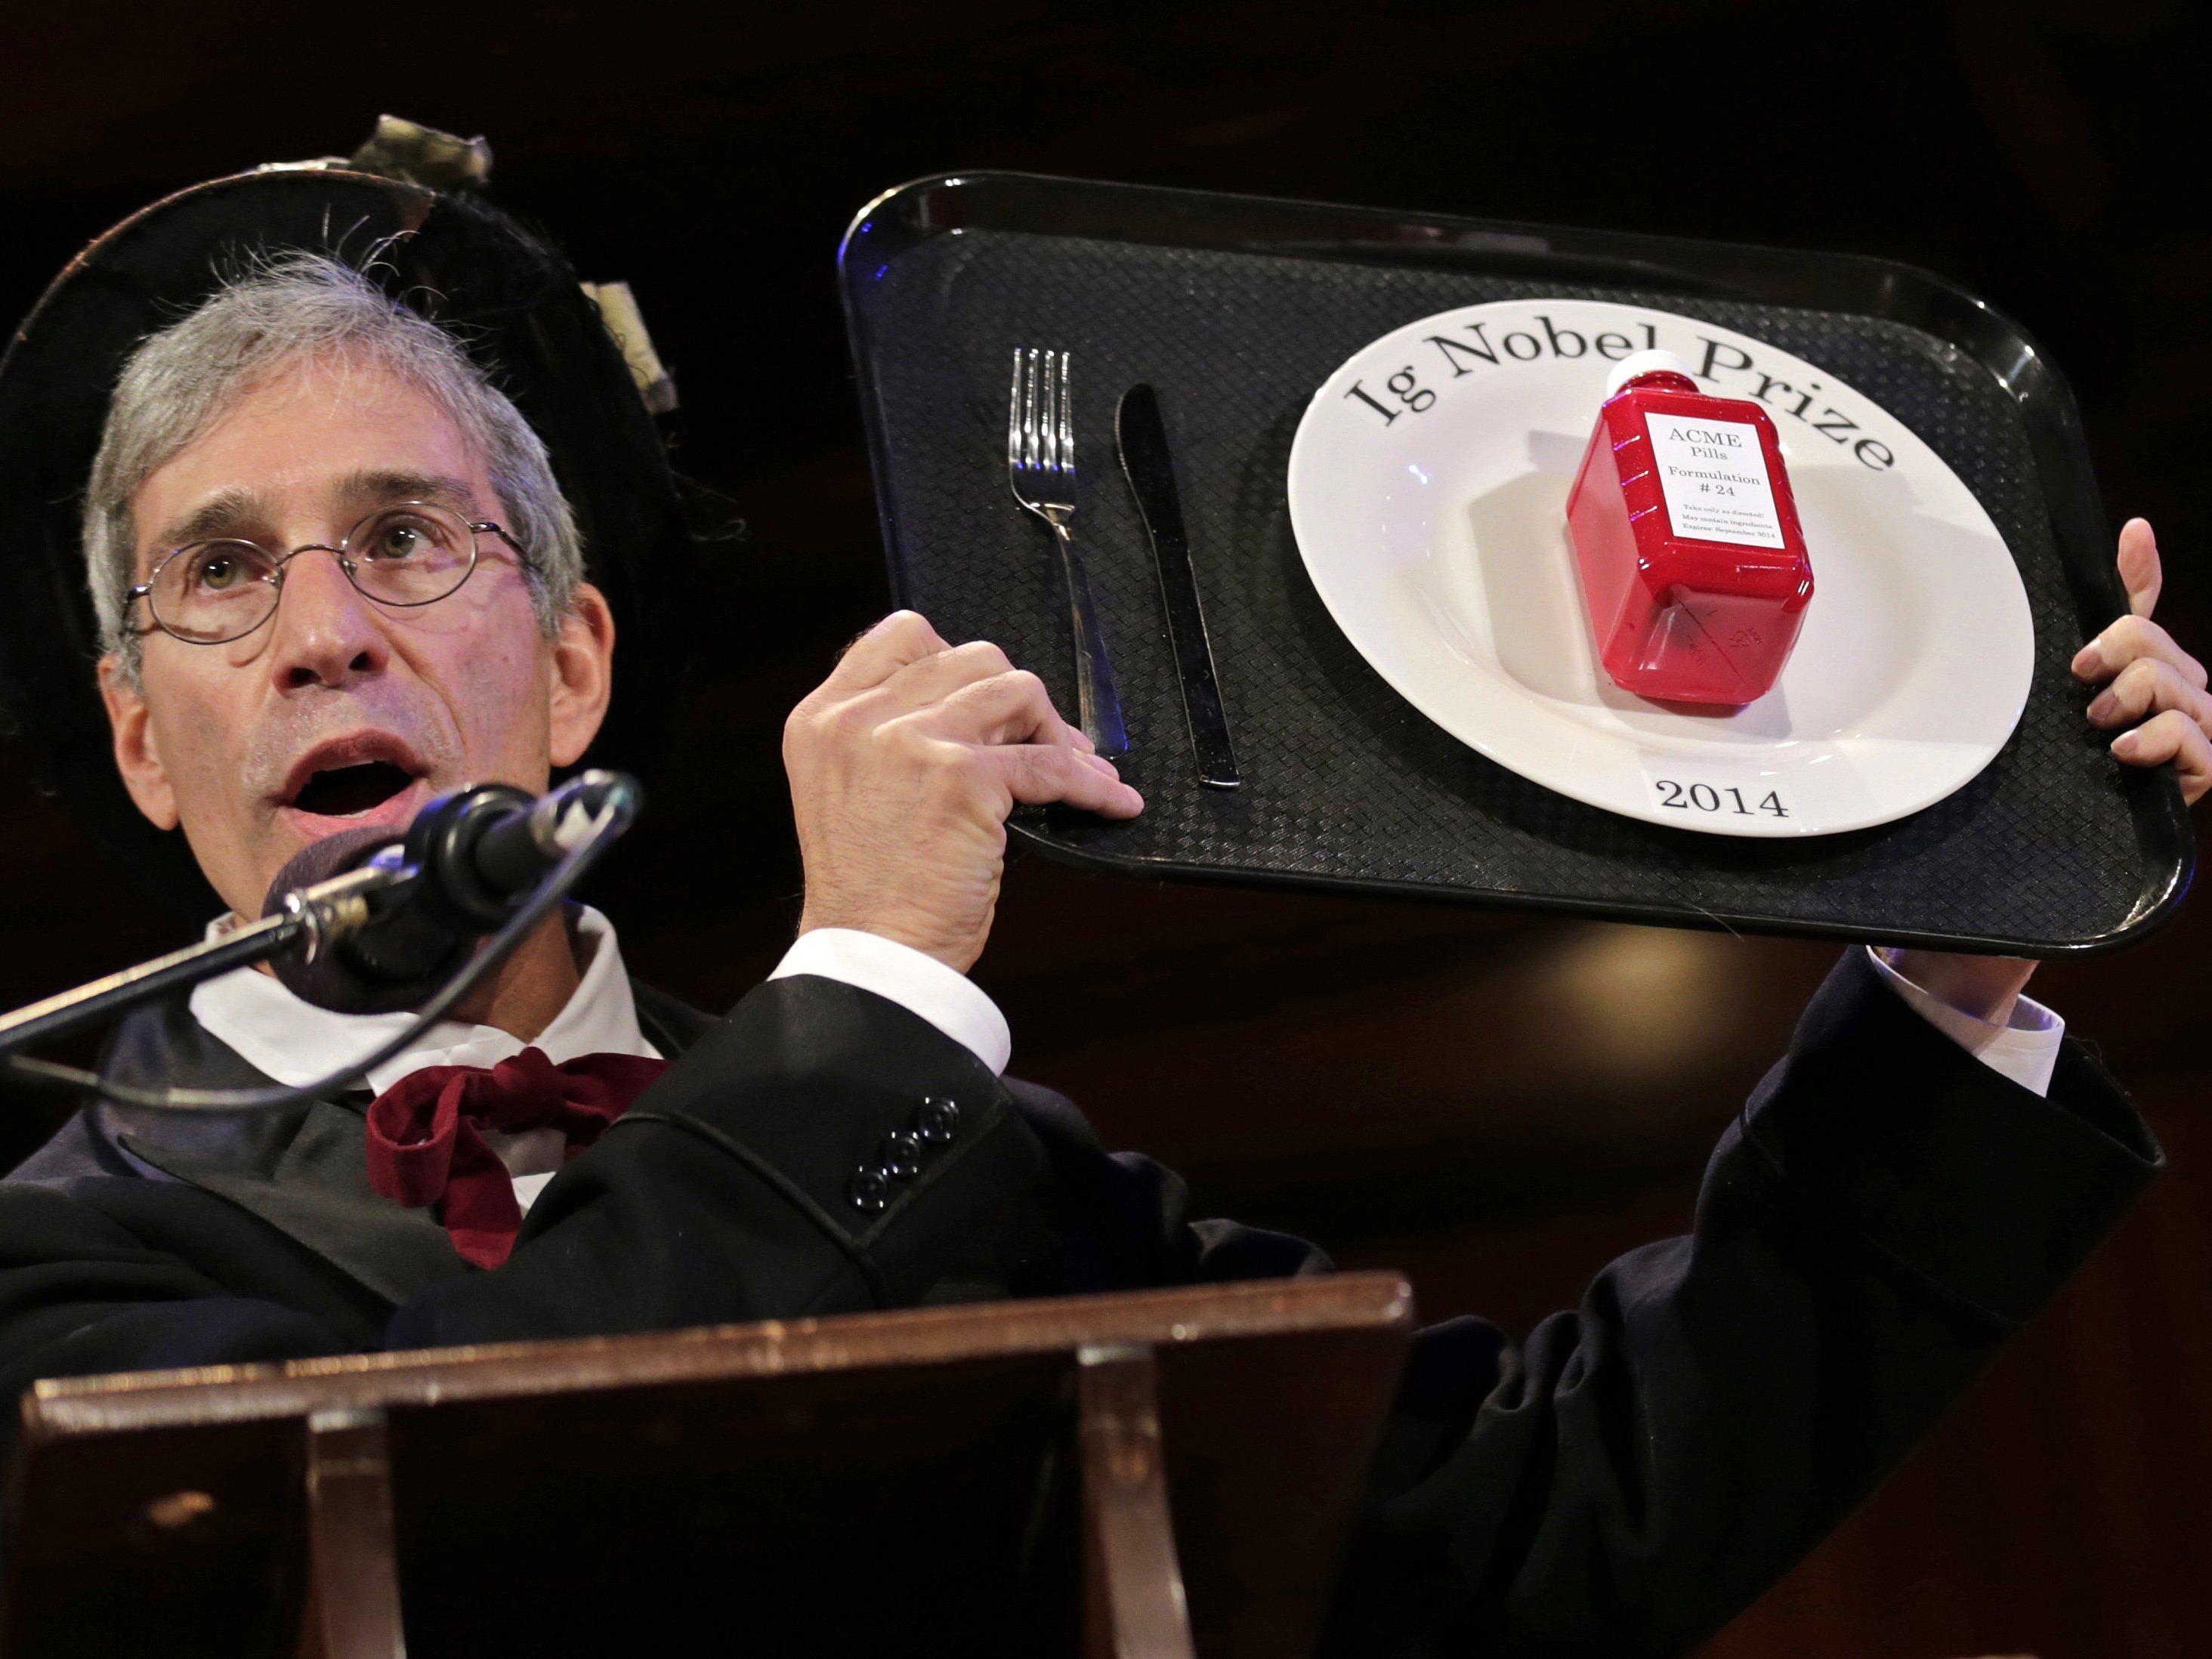 Ig-Nobelpreise 2014: Klamaukig-schrille Verleihung in Harvard. Im Bild: Marc Abrahams.